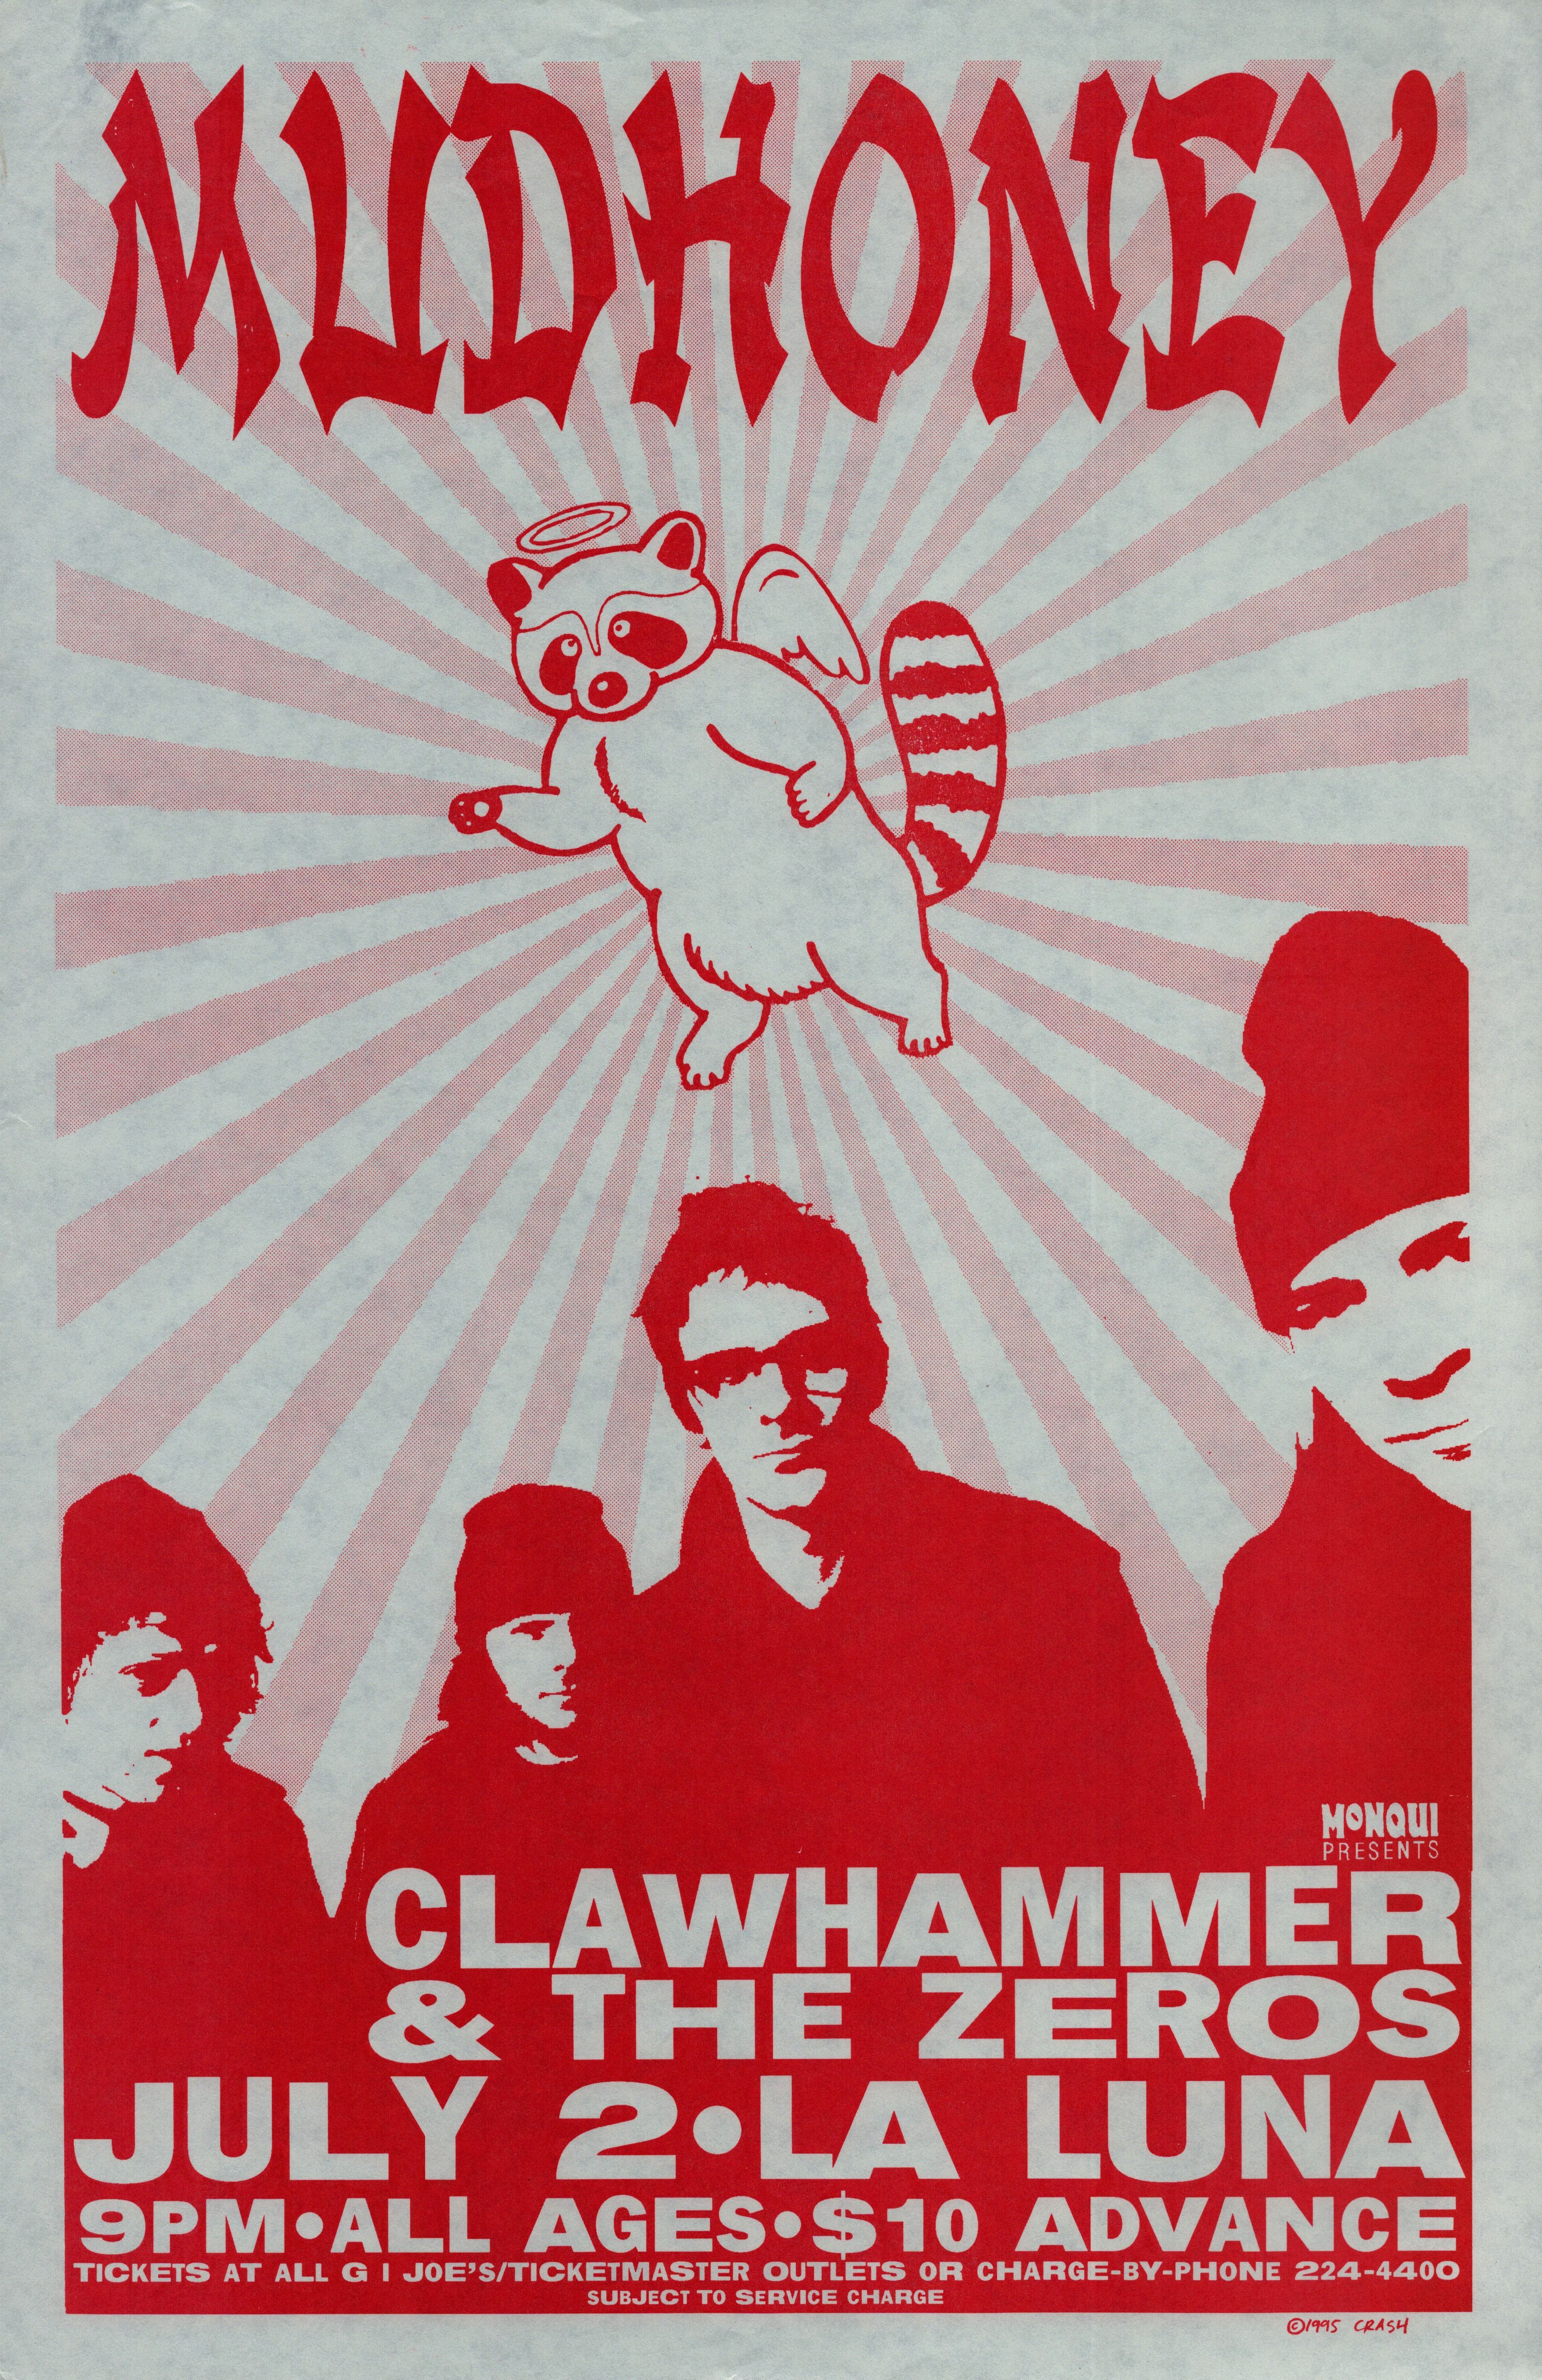 Mudhoney & Clawhammer 1000 La Luna Jul 2 Concert Poster